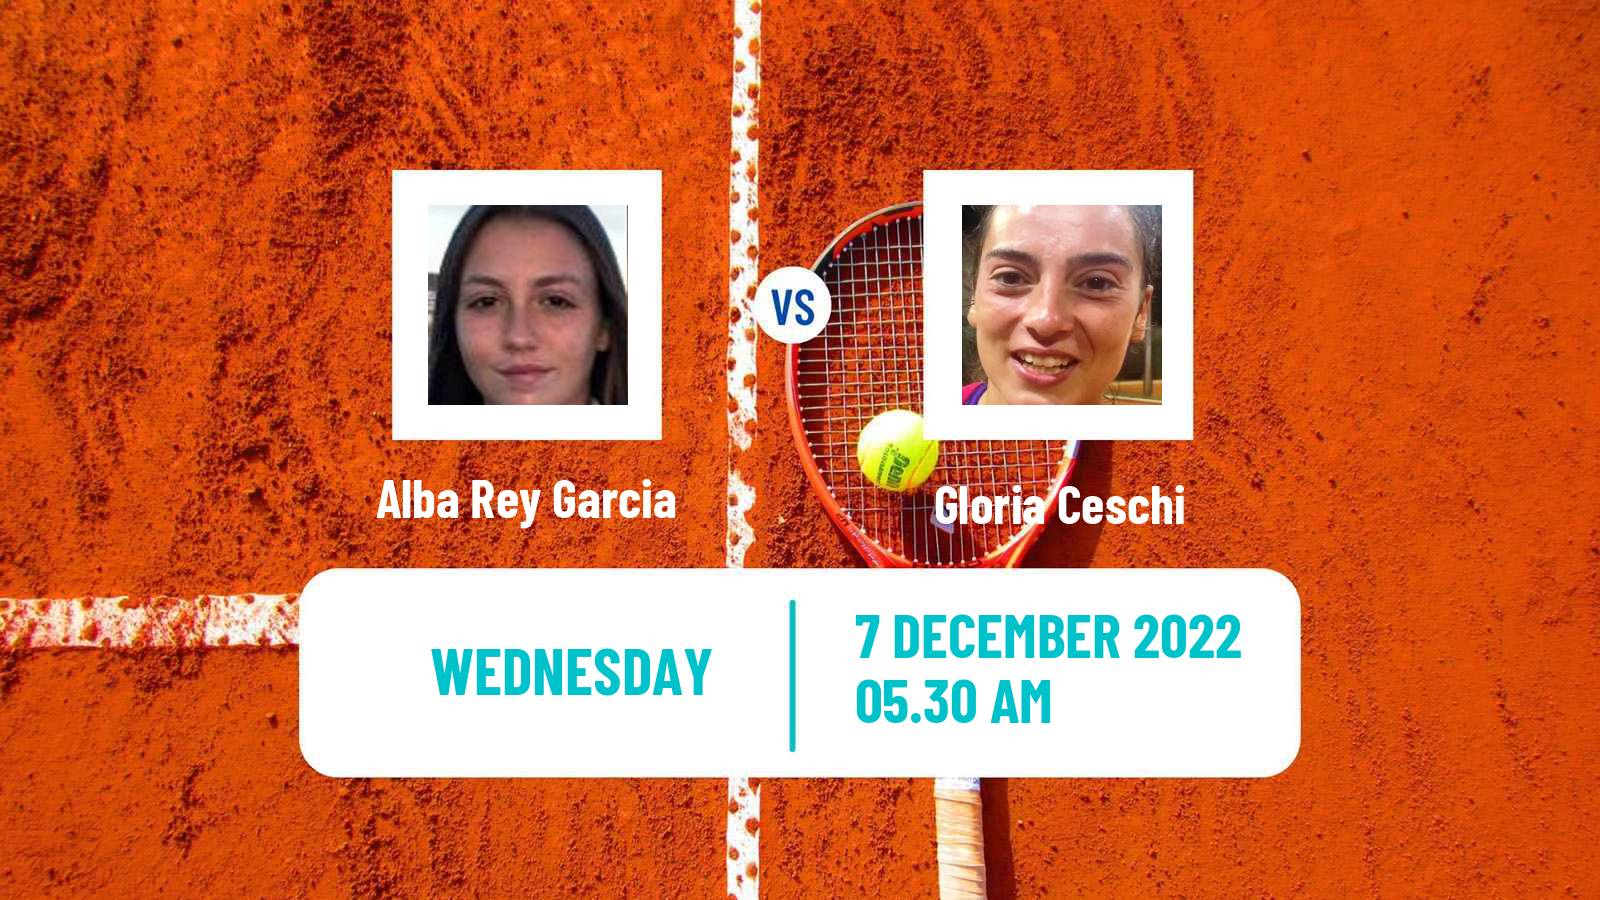 Tennis ITF Tournaments Alba Rey Garcia - Gloria Ceschi